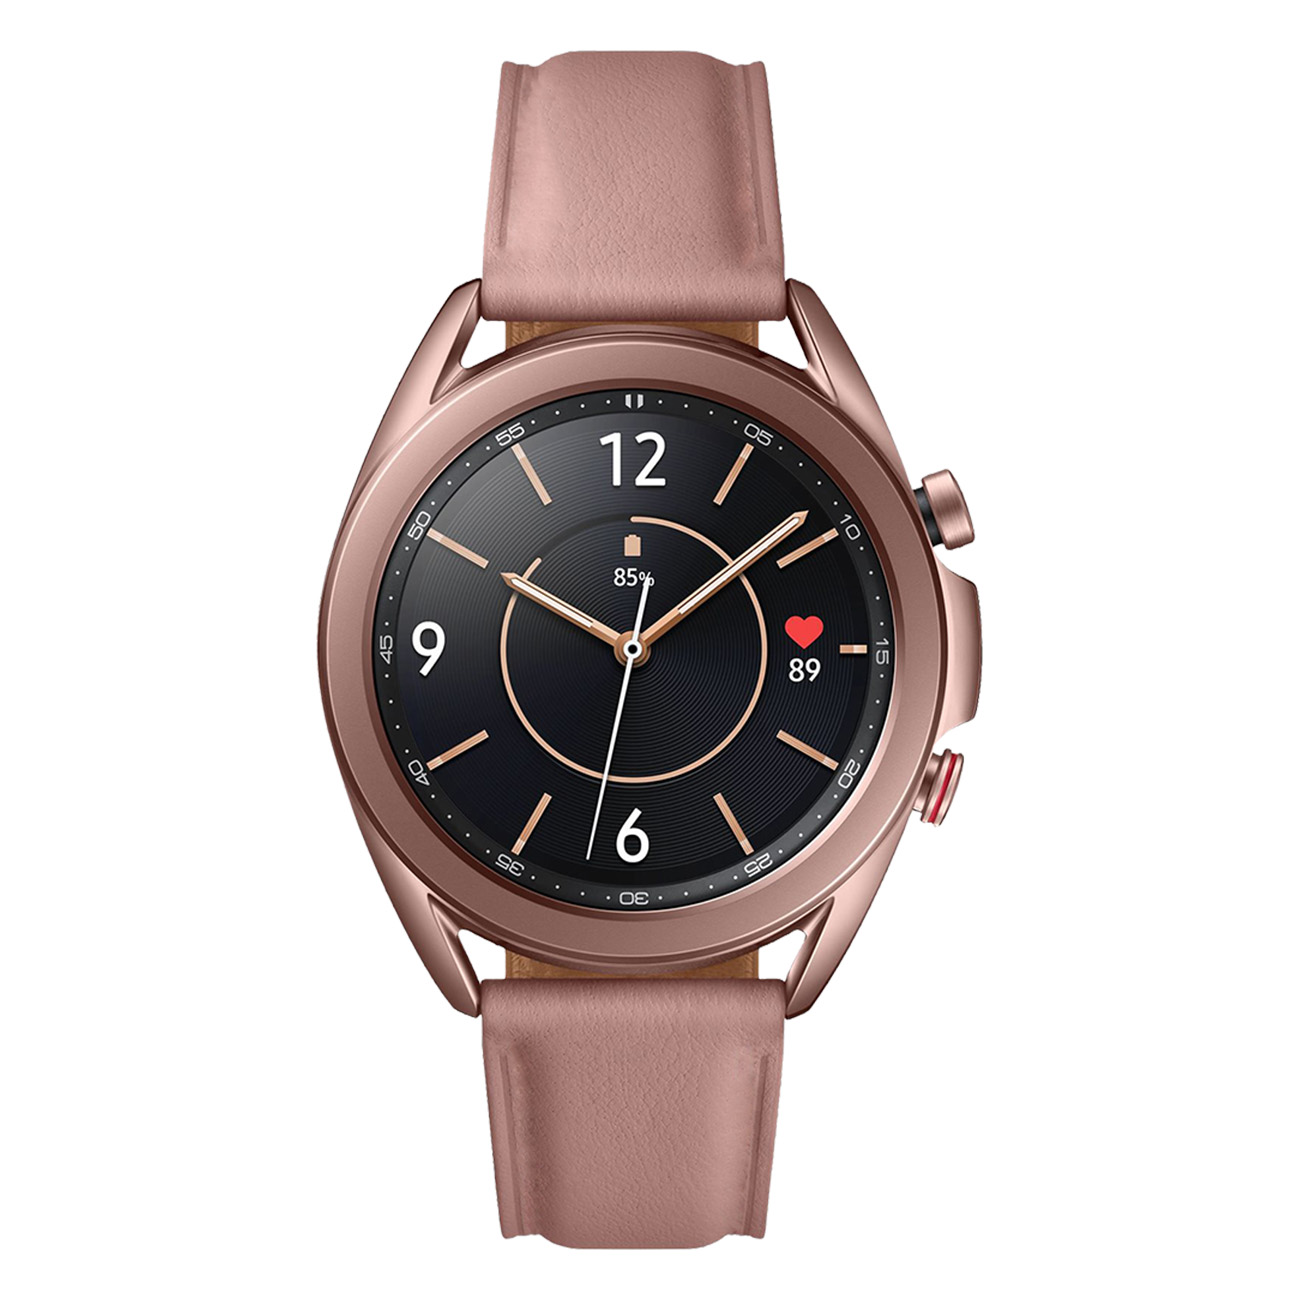 Samsung Galaxy Watch 3 Mystic Bronze | Armband ohne Naht | 41mm | LTE 4.0 | Schlaftracking, Herzfrequenztracker & Blutdruckmessung | 56 Std. Akku 